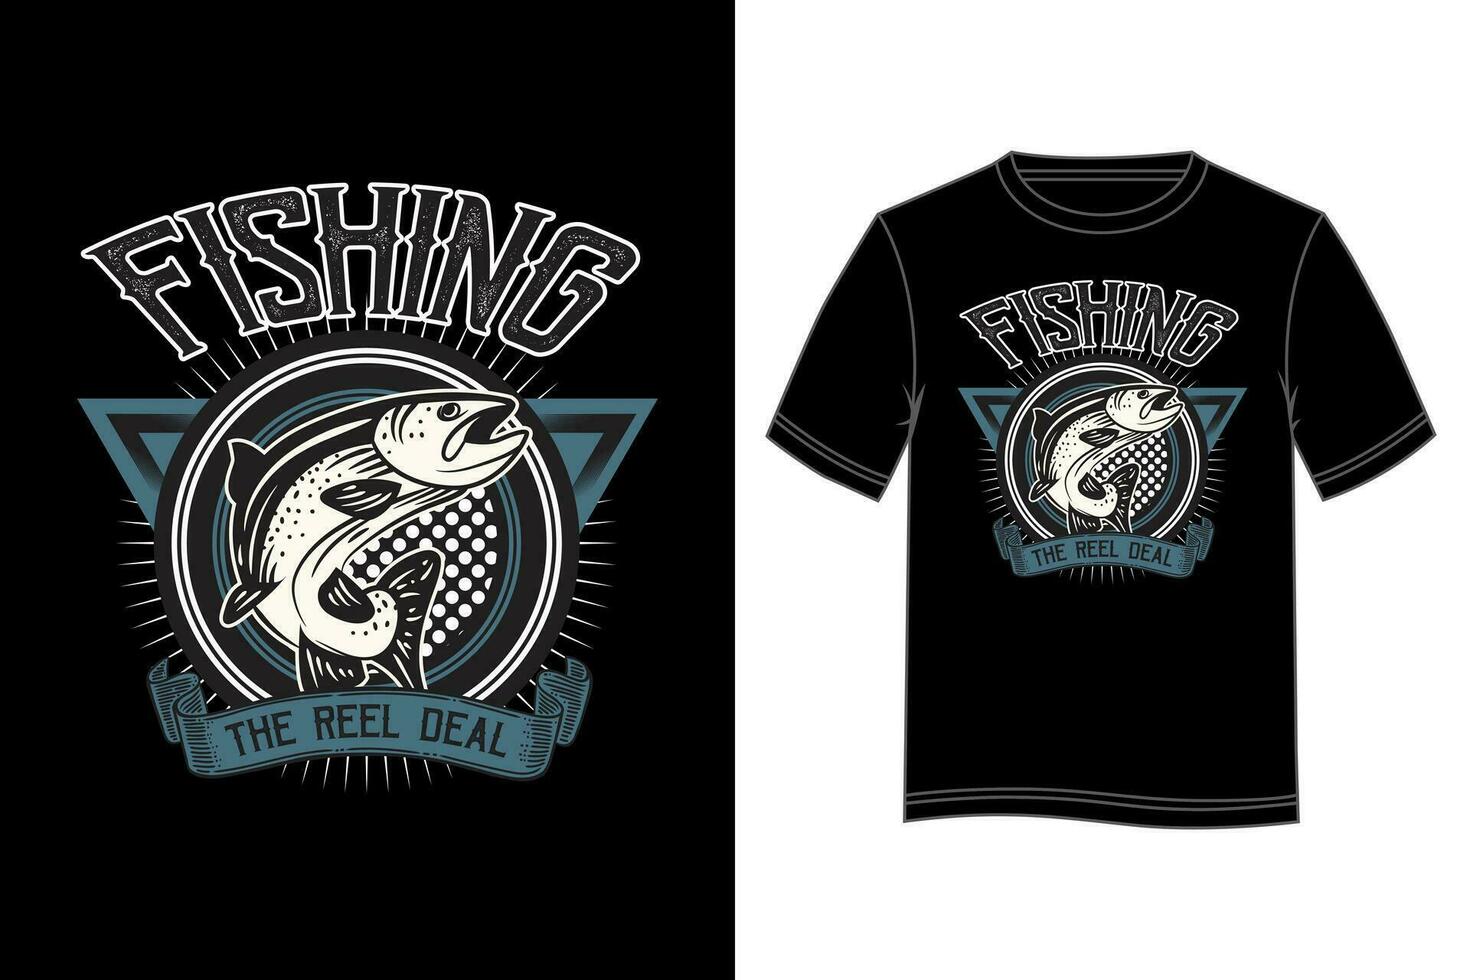 fiske de rulle handla t-shirt design. fiske t-shirt design. vektor t-shirt design.